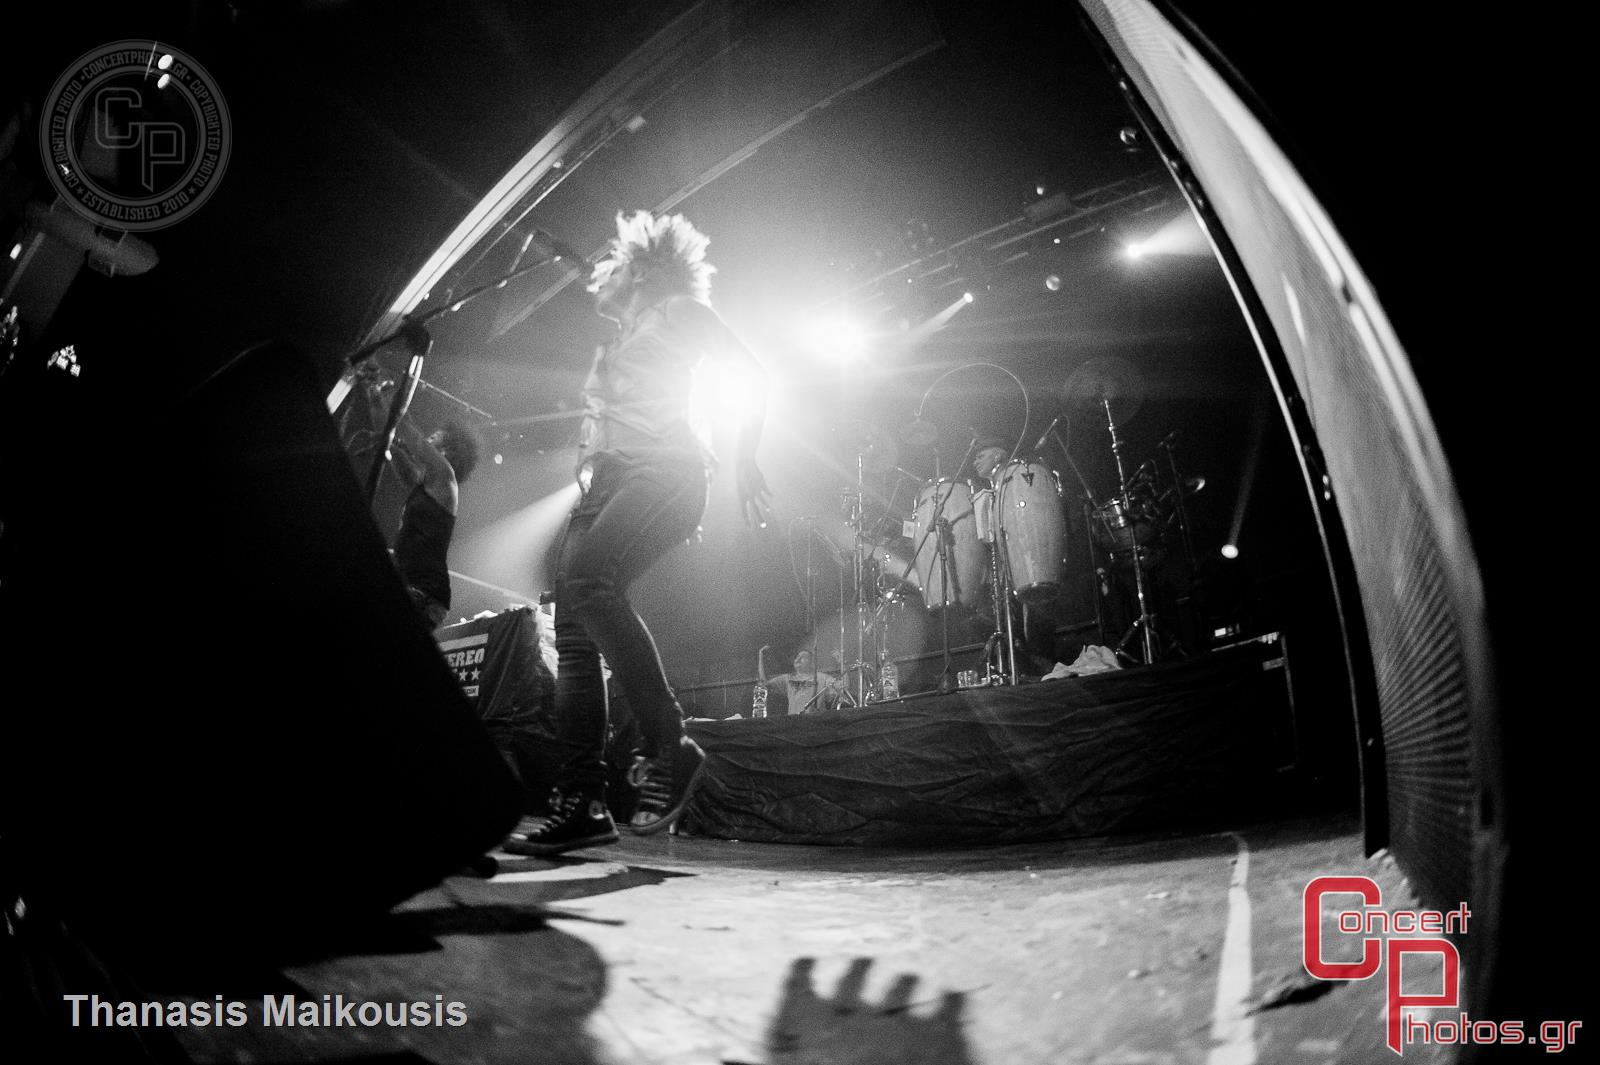 Stereo Mc's-Stereo Mcs photographer: Thanasis Maikousis - ConcertPhotos - 20141130_0016_02